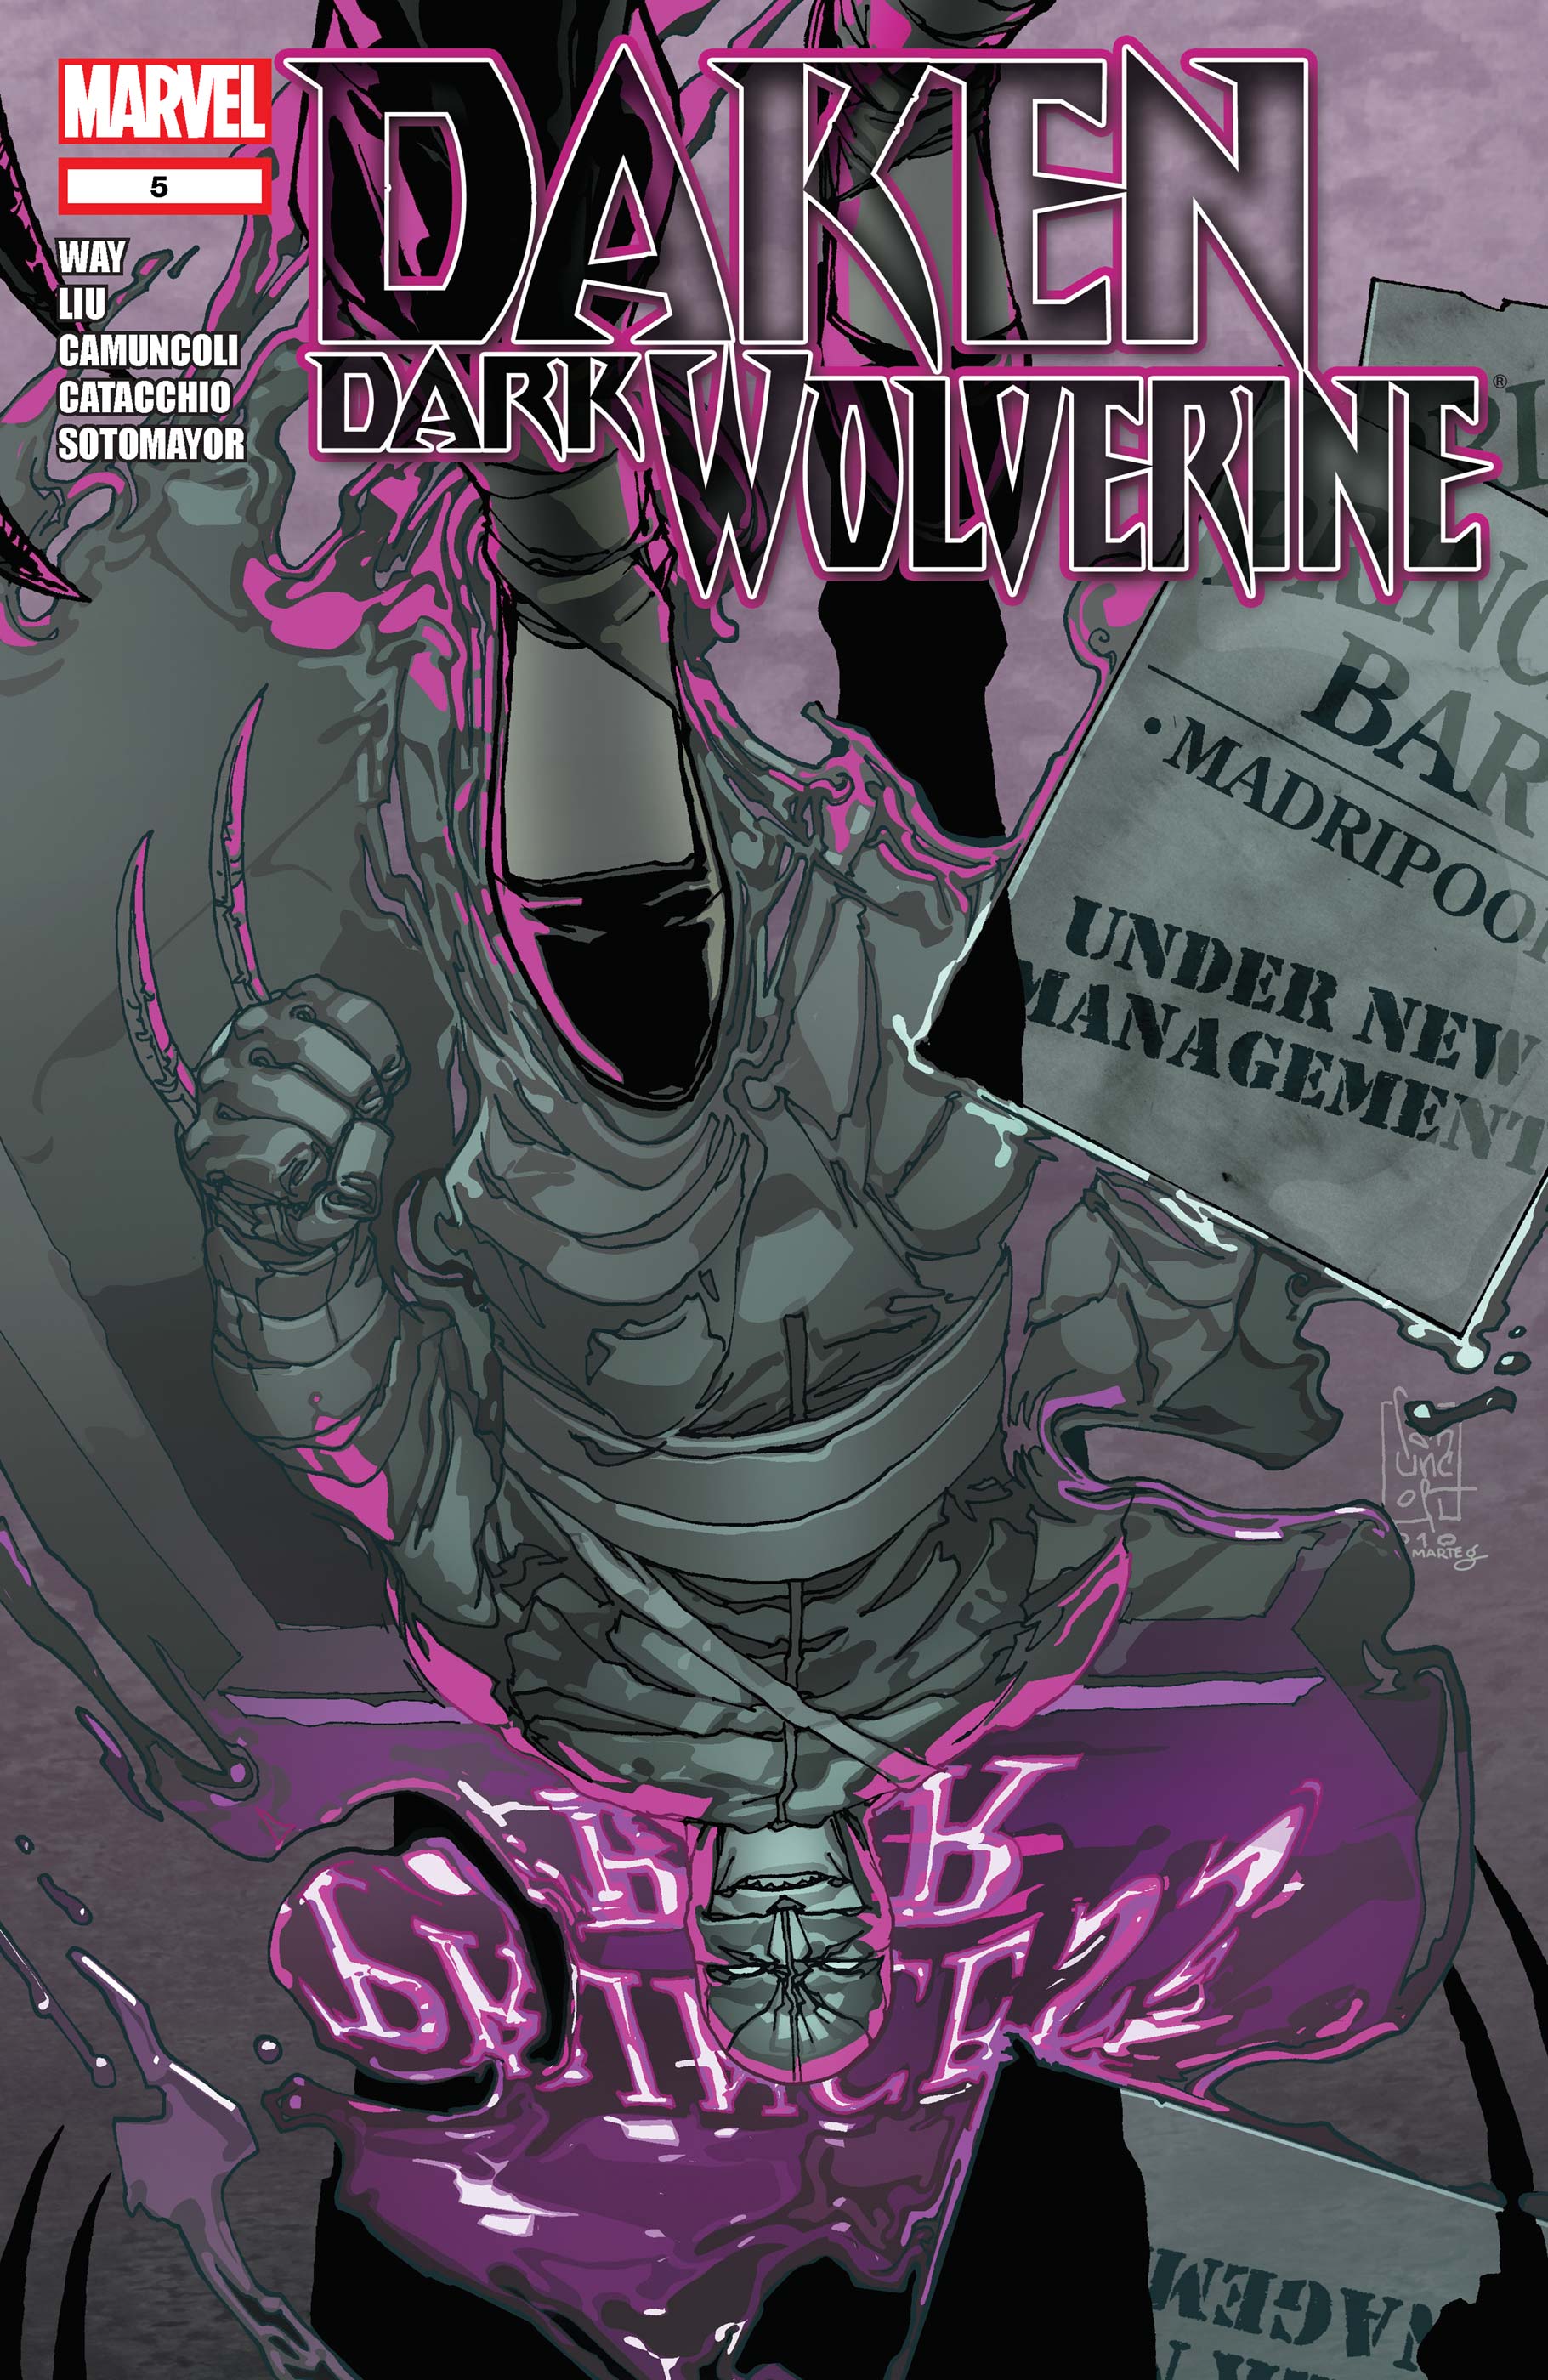 Daken: Dark Wolverine (2010) #5